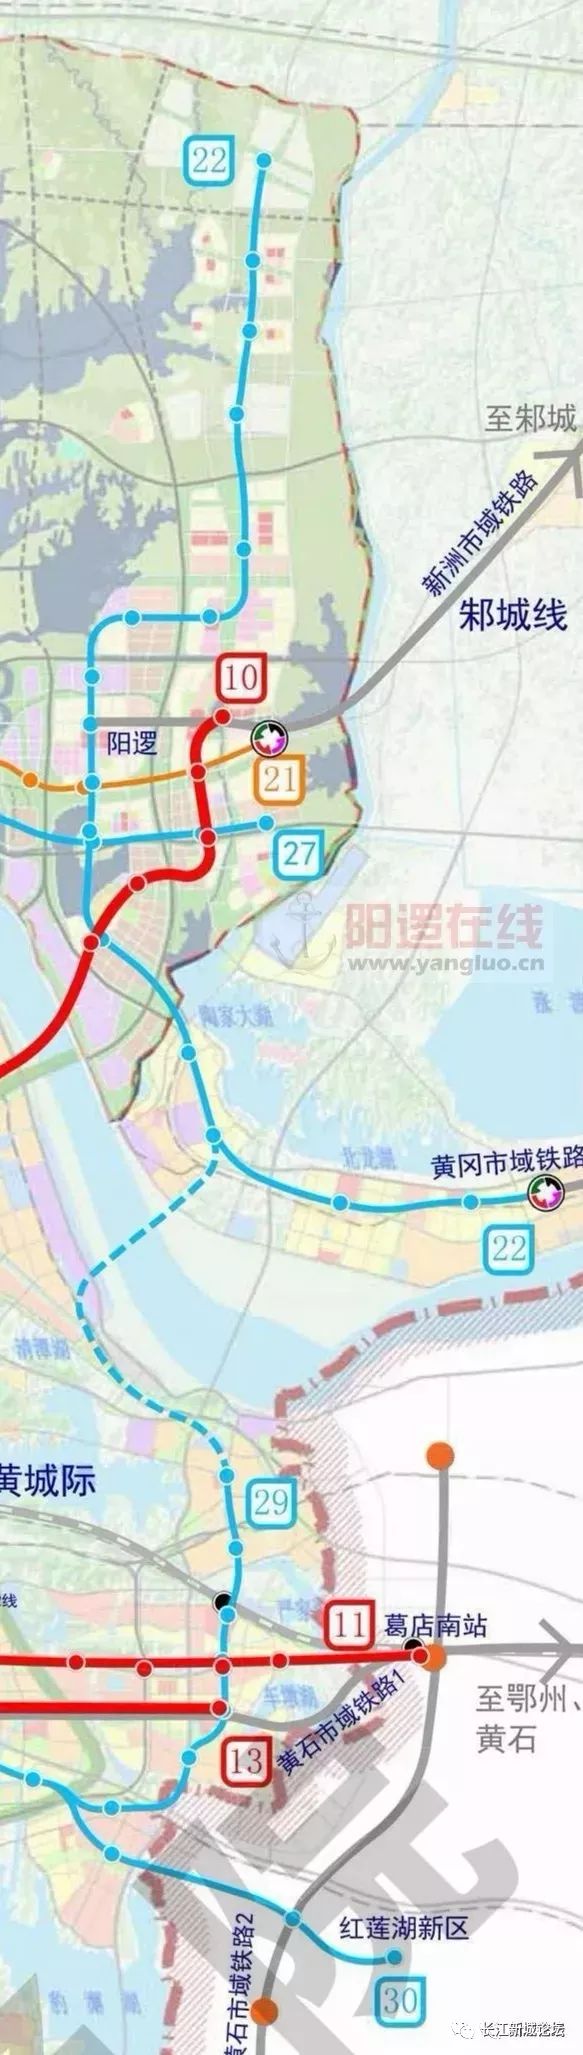 阳逻,双柳,左岭地铁22号线贯穿长江新城东部编制的前期工作已启动